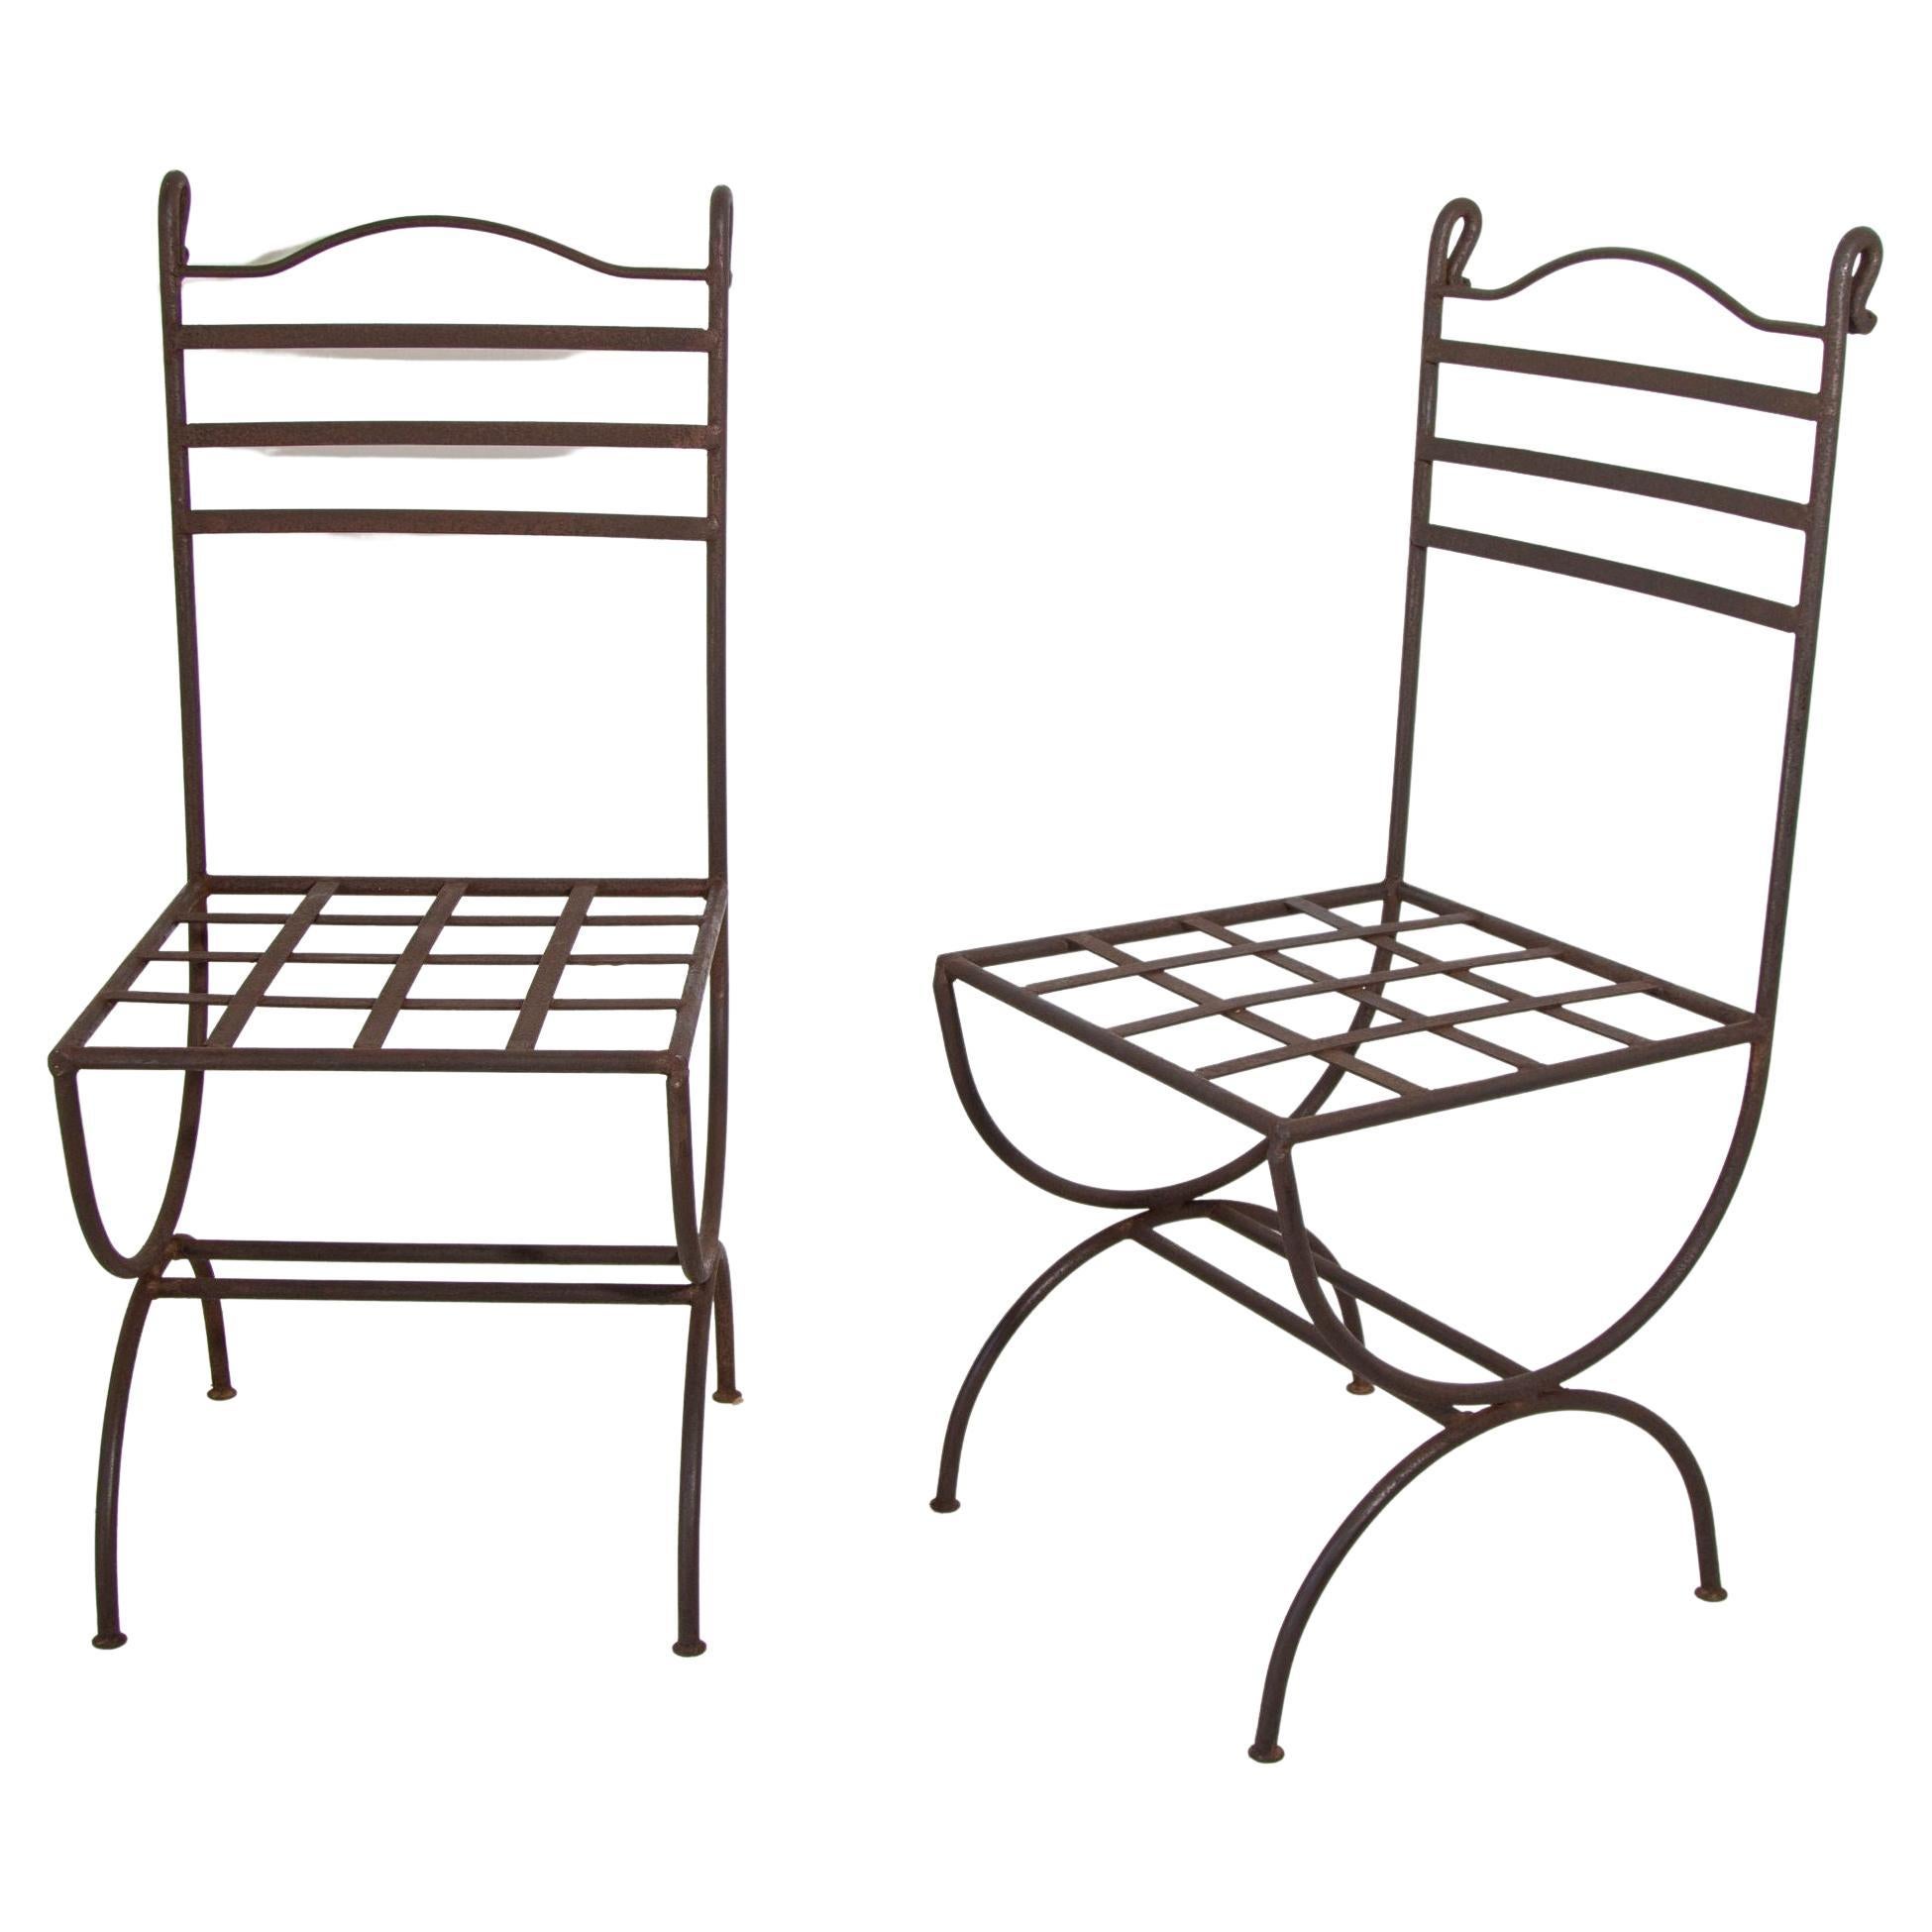 Handgeschmiedete Stühle aus Schmiedeeisen für den Außenbereich French Provincial Style